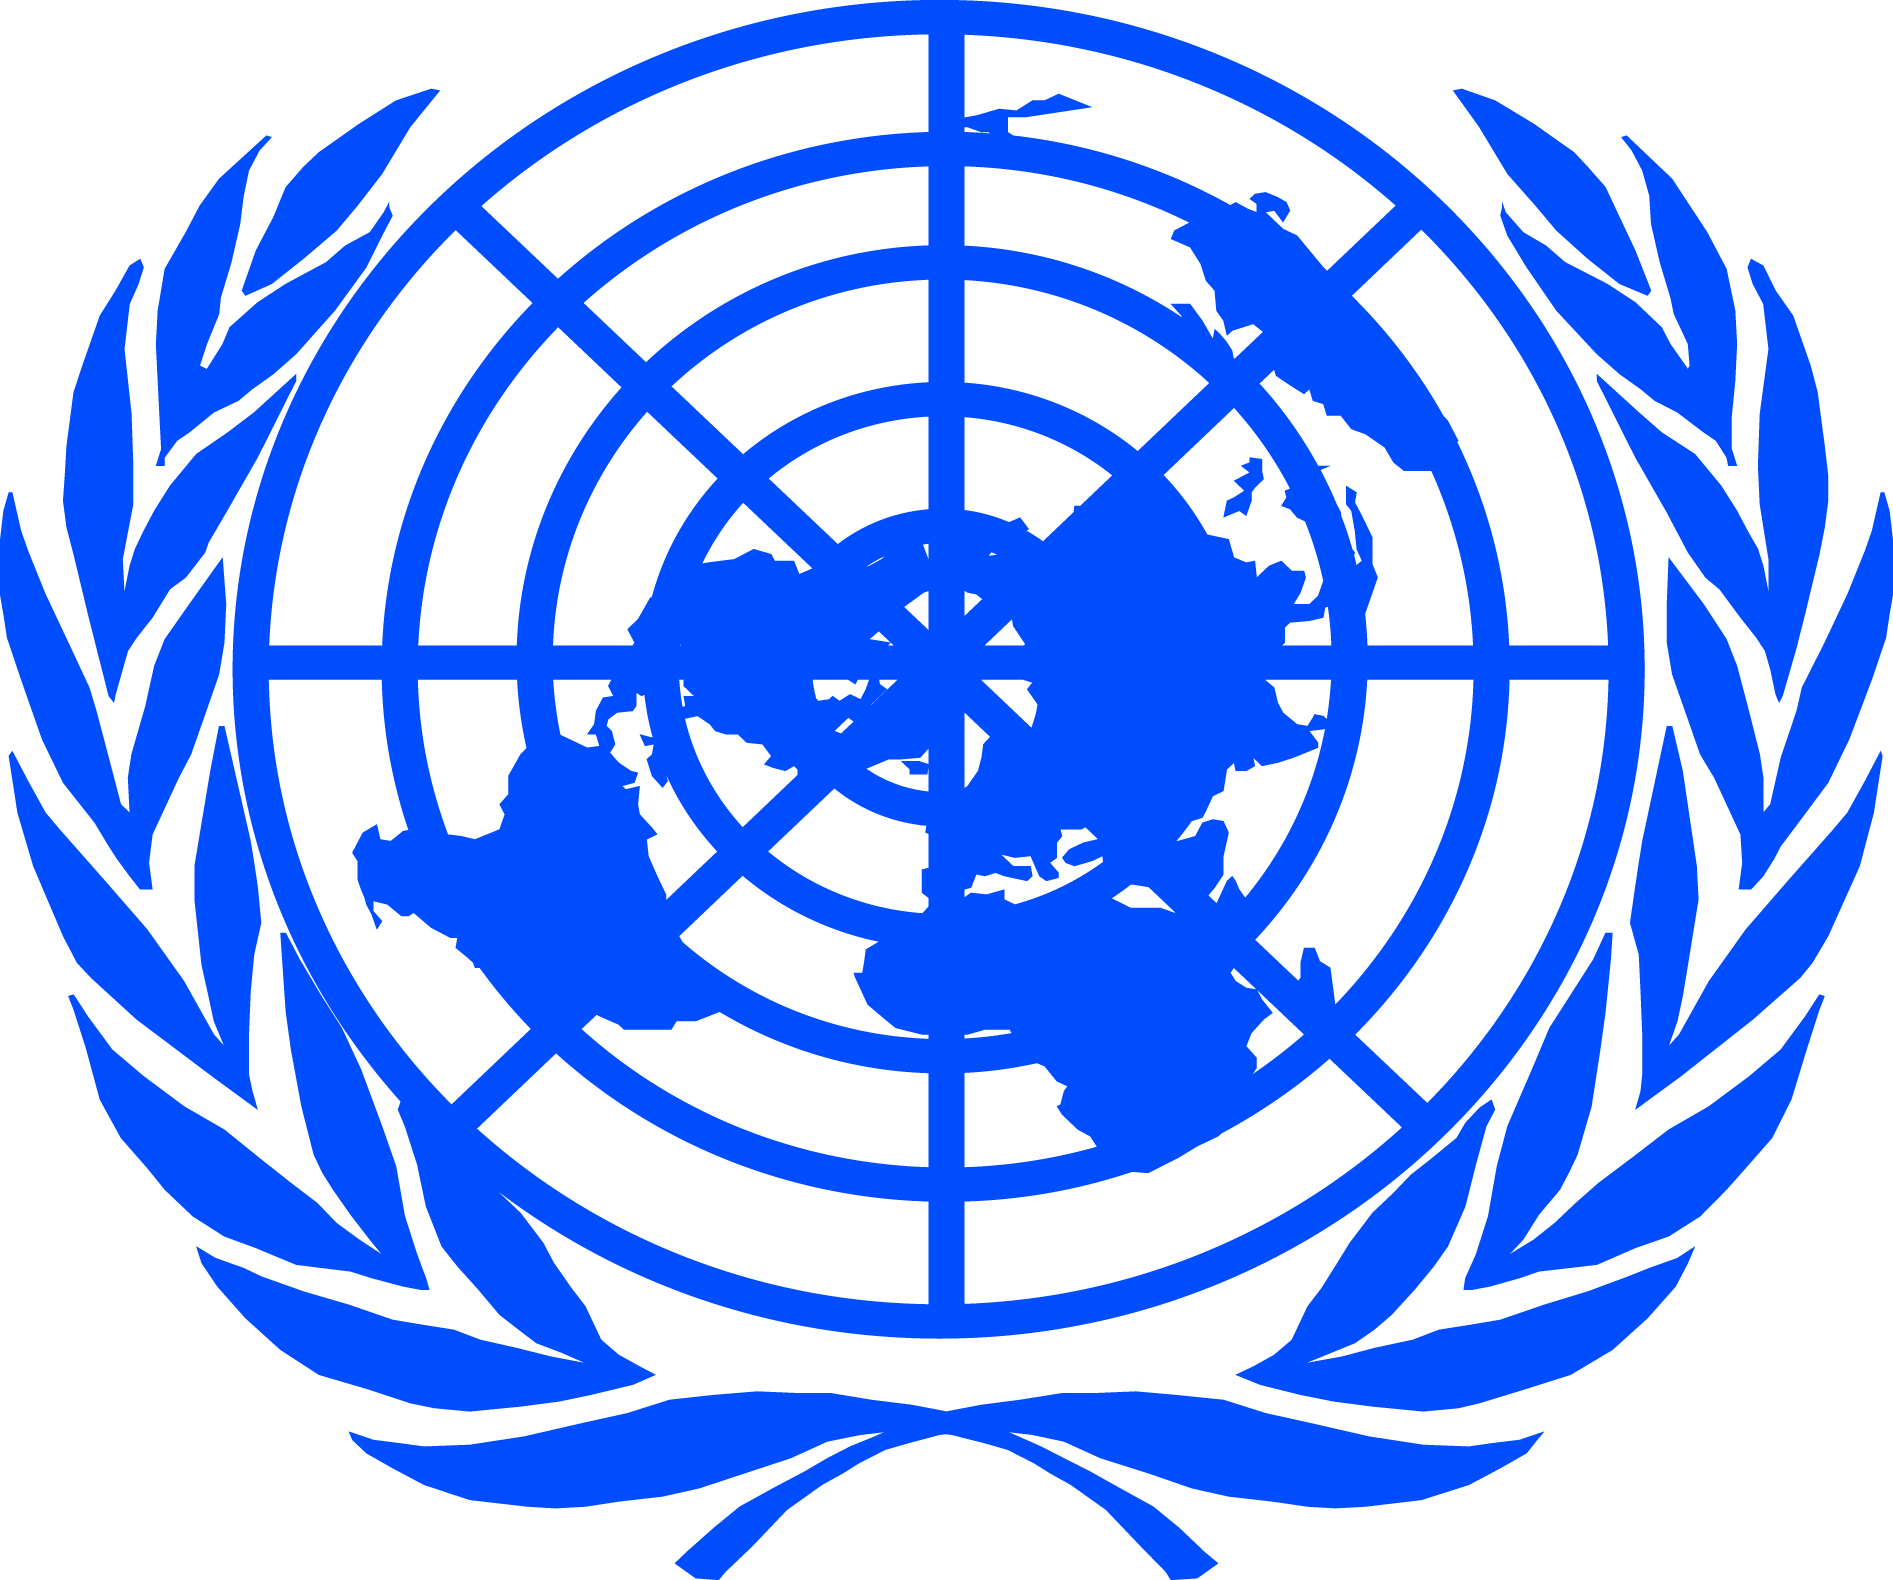 Оон общество. Всемирная организация ООН. Международные организации ООН. Организация Объединенных наций (ООН). Совет безопасности ООН флаг.